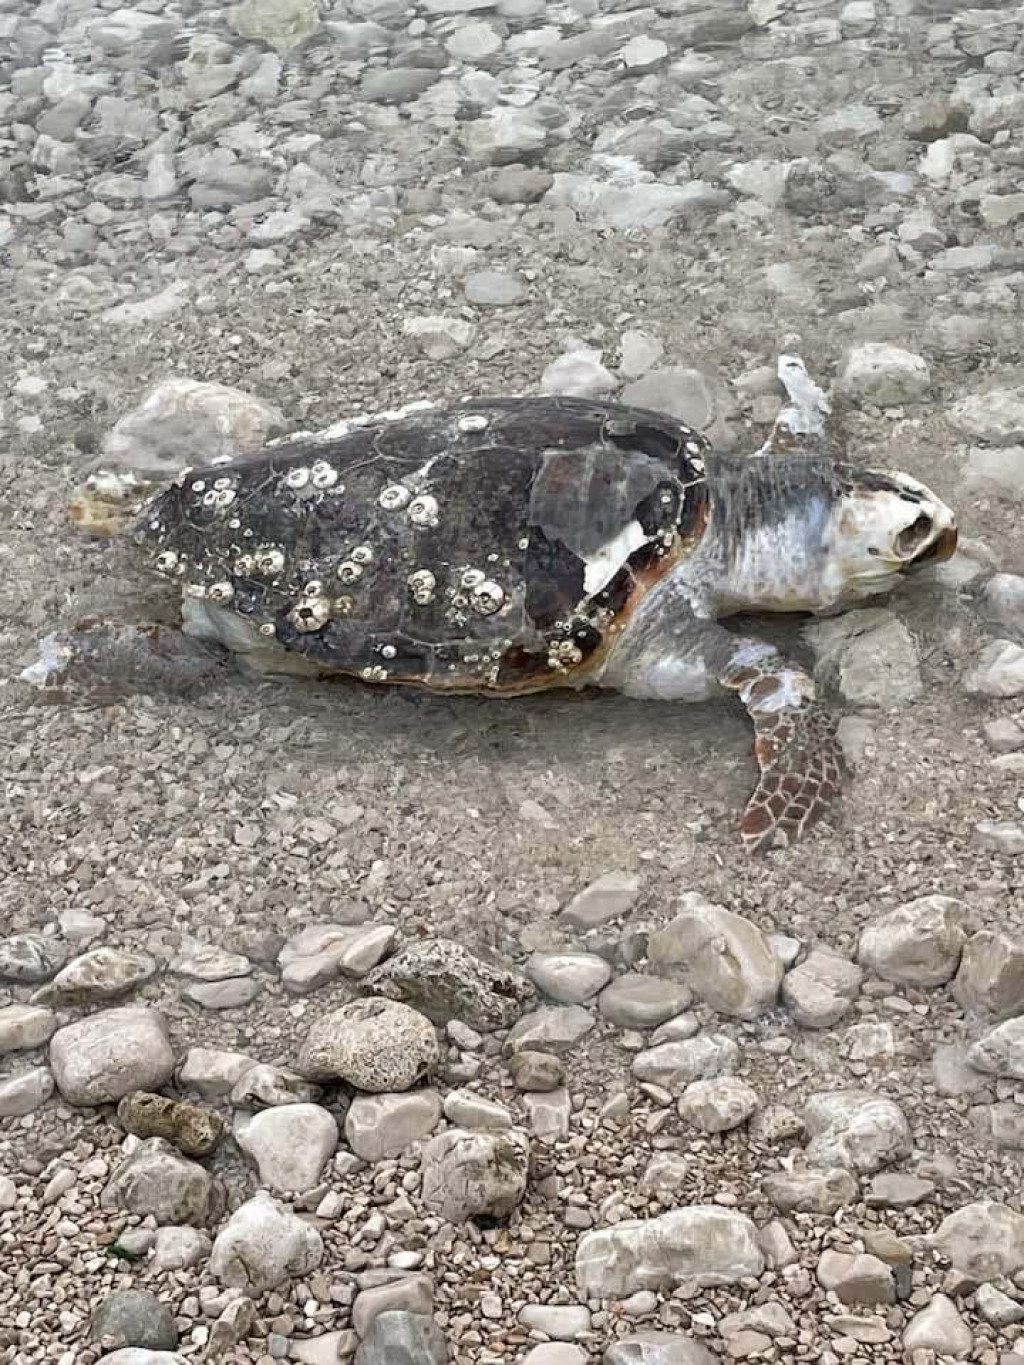 &lt;p&gt;Na plažu u Orebiću uginula je glavata želva&lt;/p&gt;